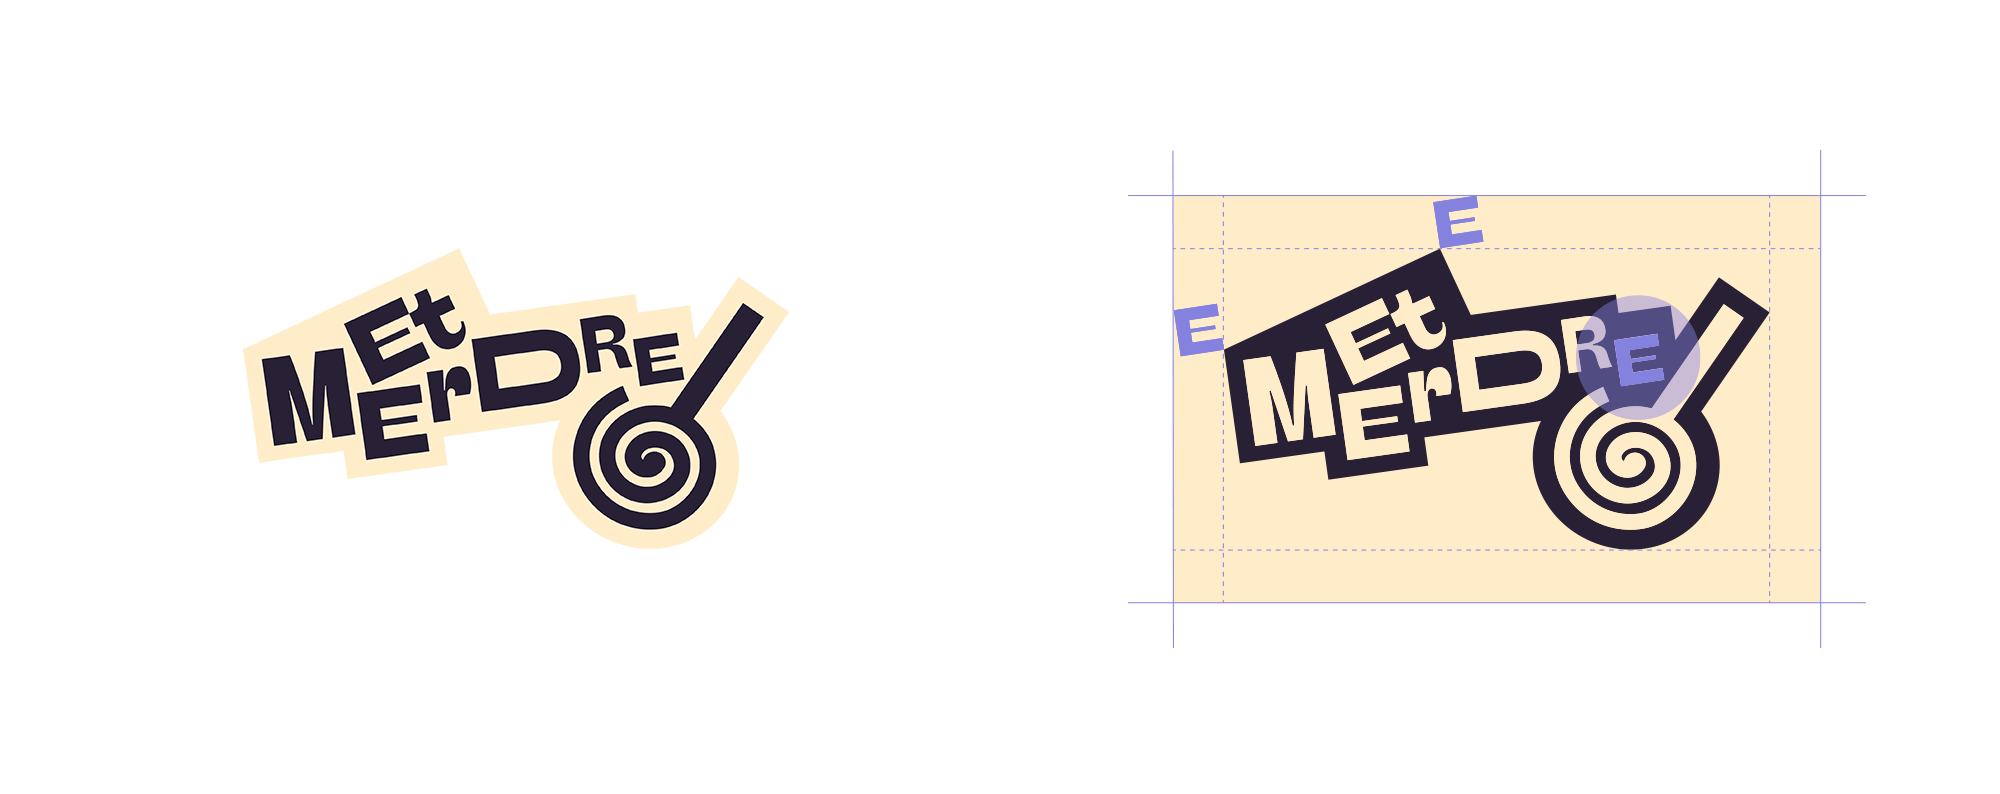 Logotype Et Merdre 